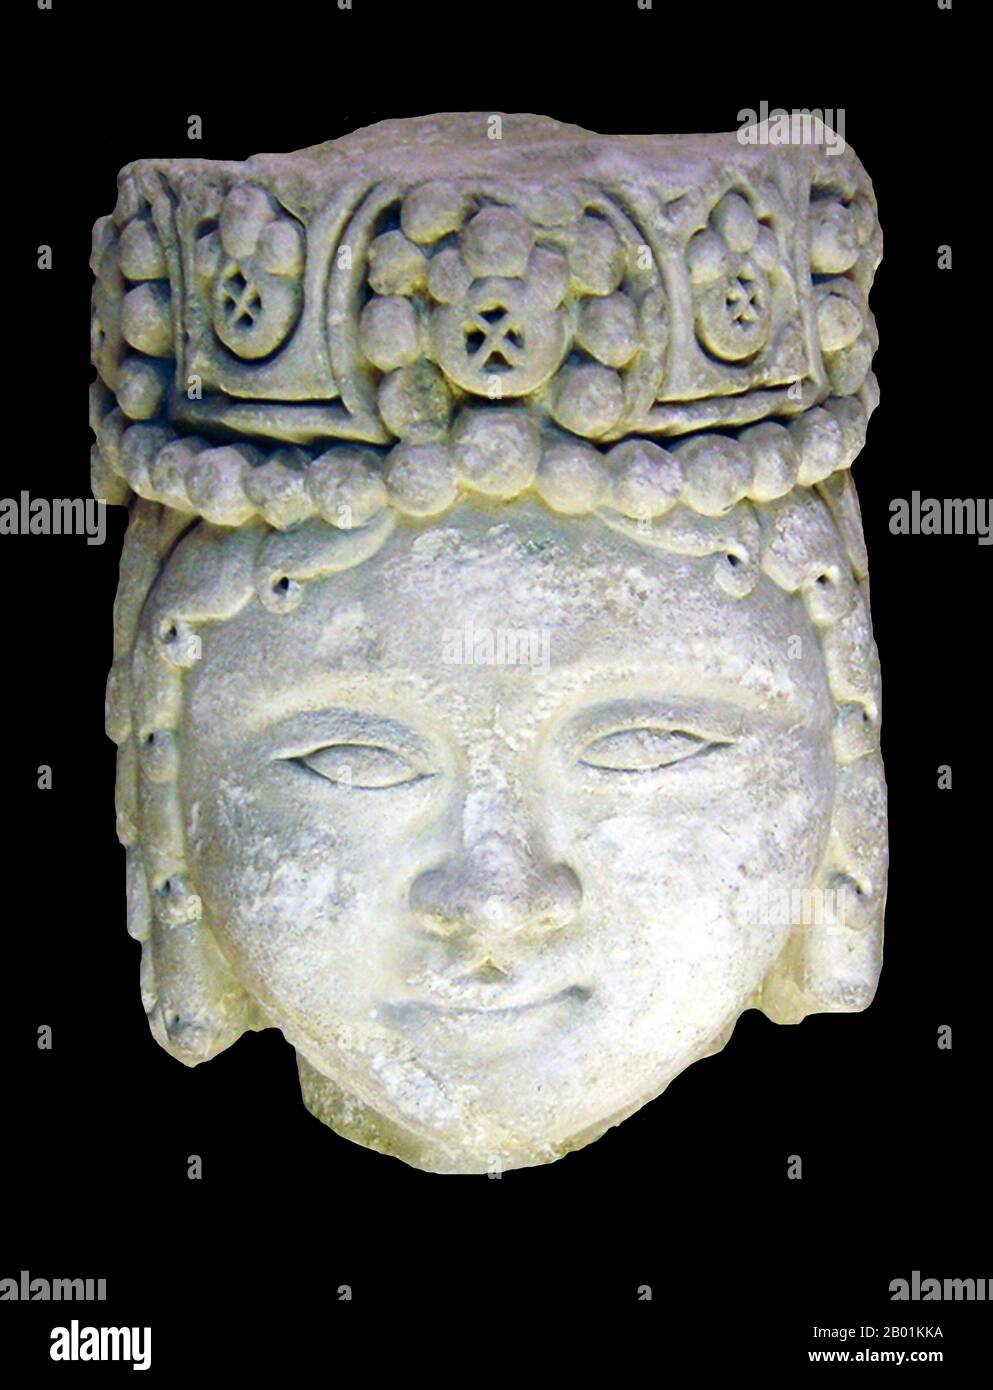 Iran/Persien: Kopf einer männlichen Seldschuken-königlichen Figur mit perlenbesetztem Kopfschmuck. Kalksteinskulptur, 12.-13. Jahrhundert. Foto von Zereshk (CC BY 3,0 Lizenz). Das große Seldschukische Reich, gegründet 1037, war ein mittelalterliches Persianat, Turko-Persisch, sunnitisches muslimisches Reich, das aus dem Qynyq-Zweig der Oghuz-Türken stammte. Das Seldschukische Reich kontrollierte ein ausgedehntes Gebiet, das sich vom Hindukusch bis nach Ostanatolien und von Zentralasien bis zum Persischen Golf erstreckte. Aus ihren Heimatländern nahe dem Aral-Meer zogen die Seldschuken zuerst nach Khorasan und dann nach Persien, bevor sie schließlich Ostanatolien eroberten. Stockfoto